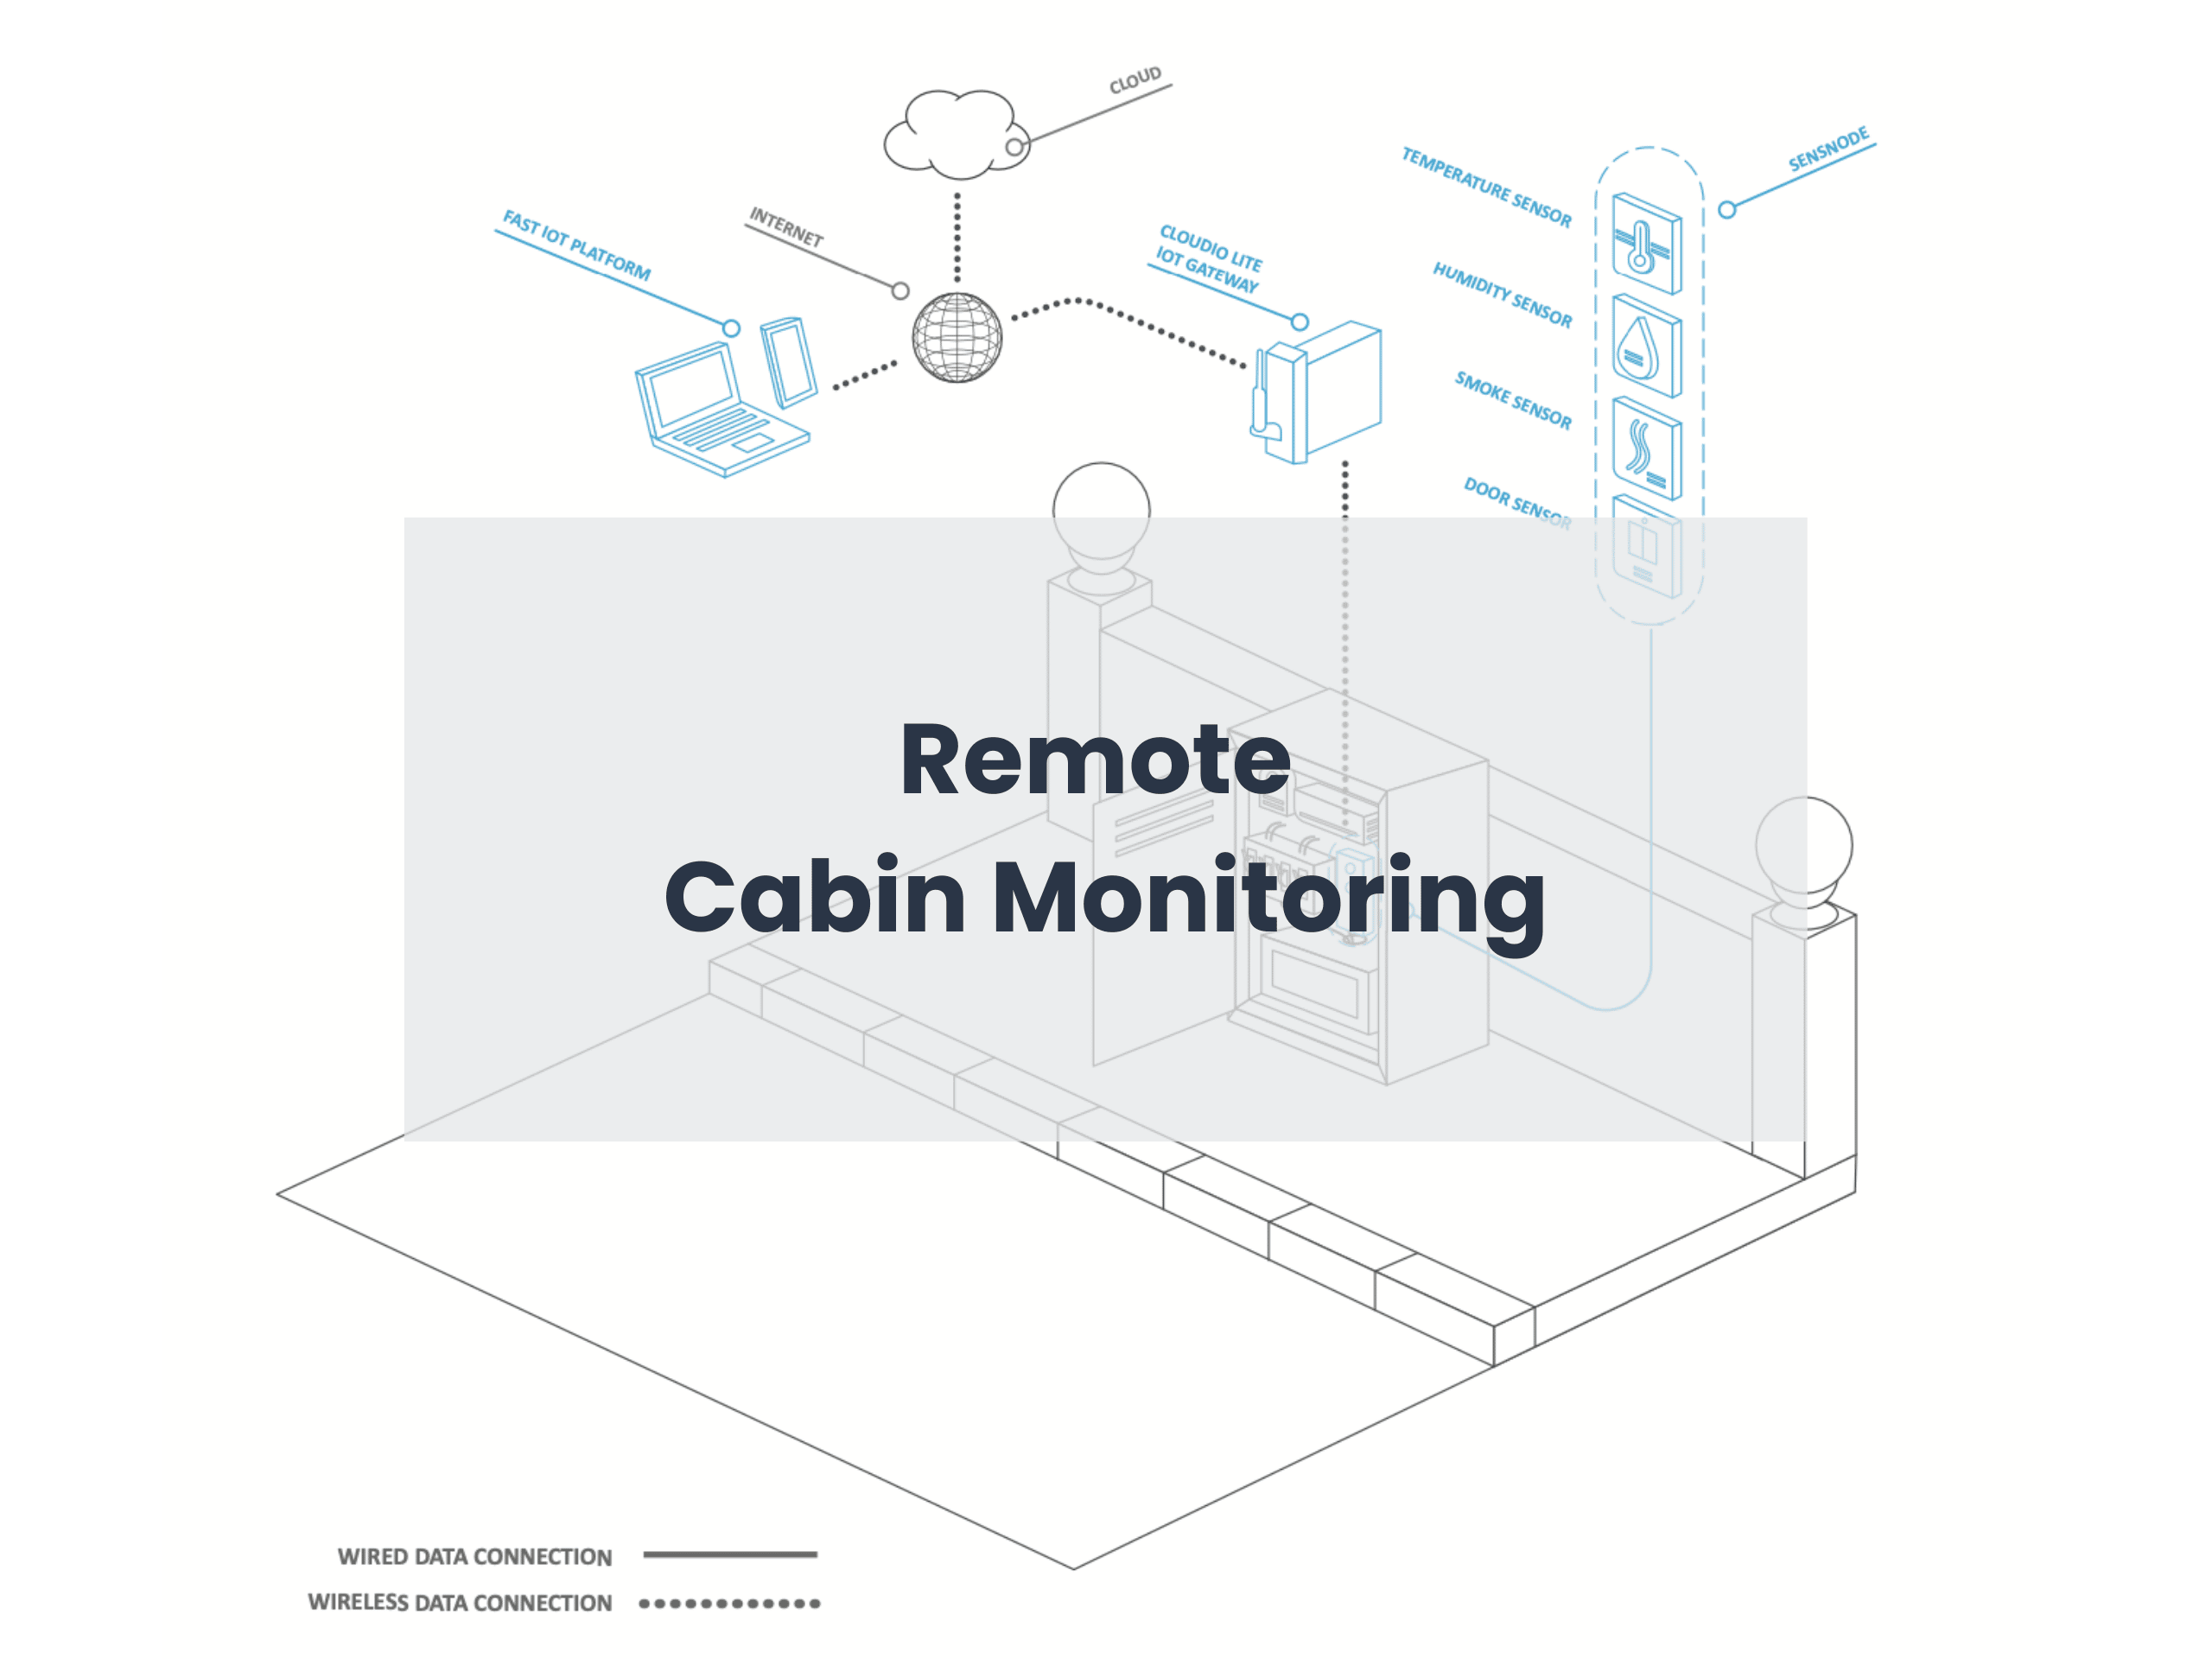 Remote Cabin Monitoring